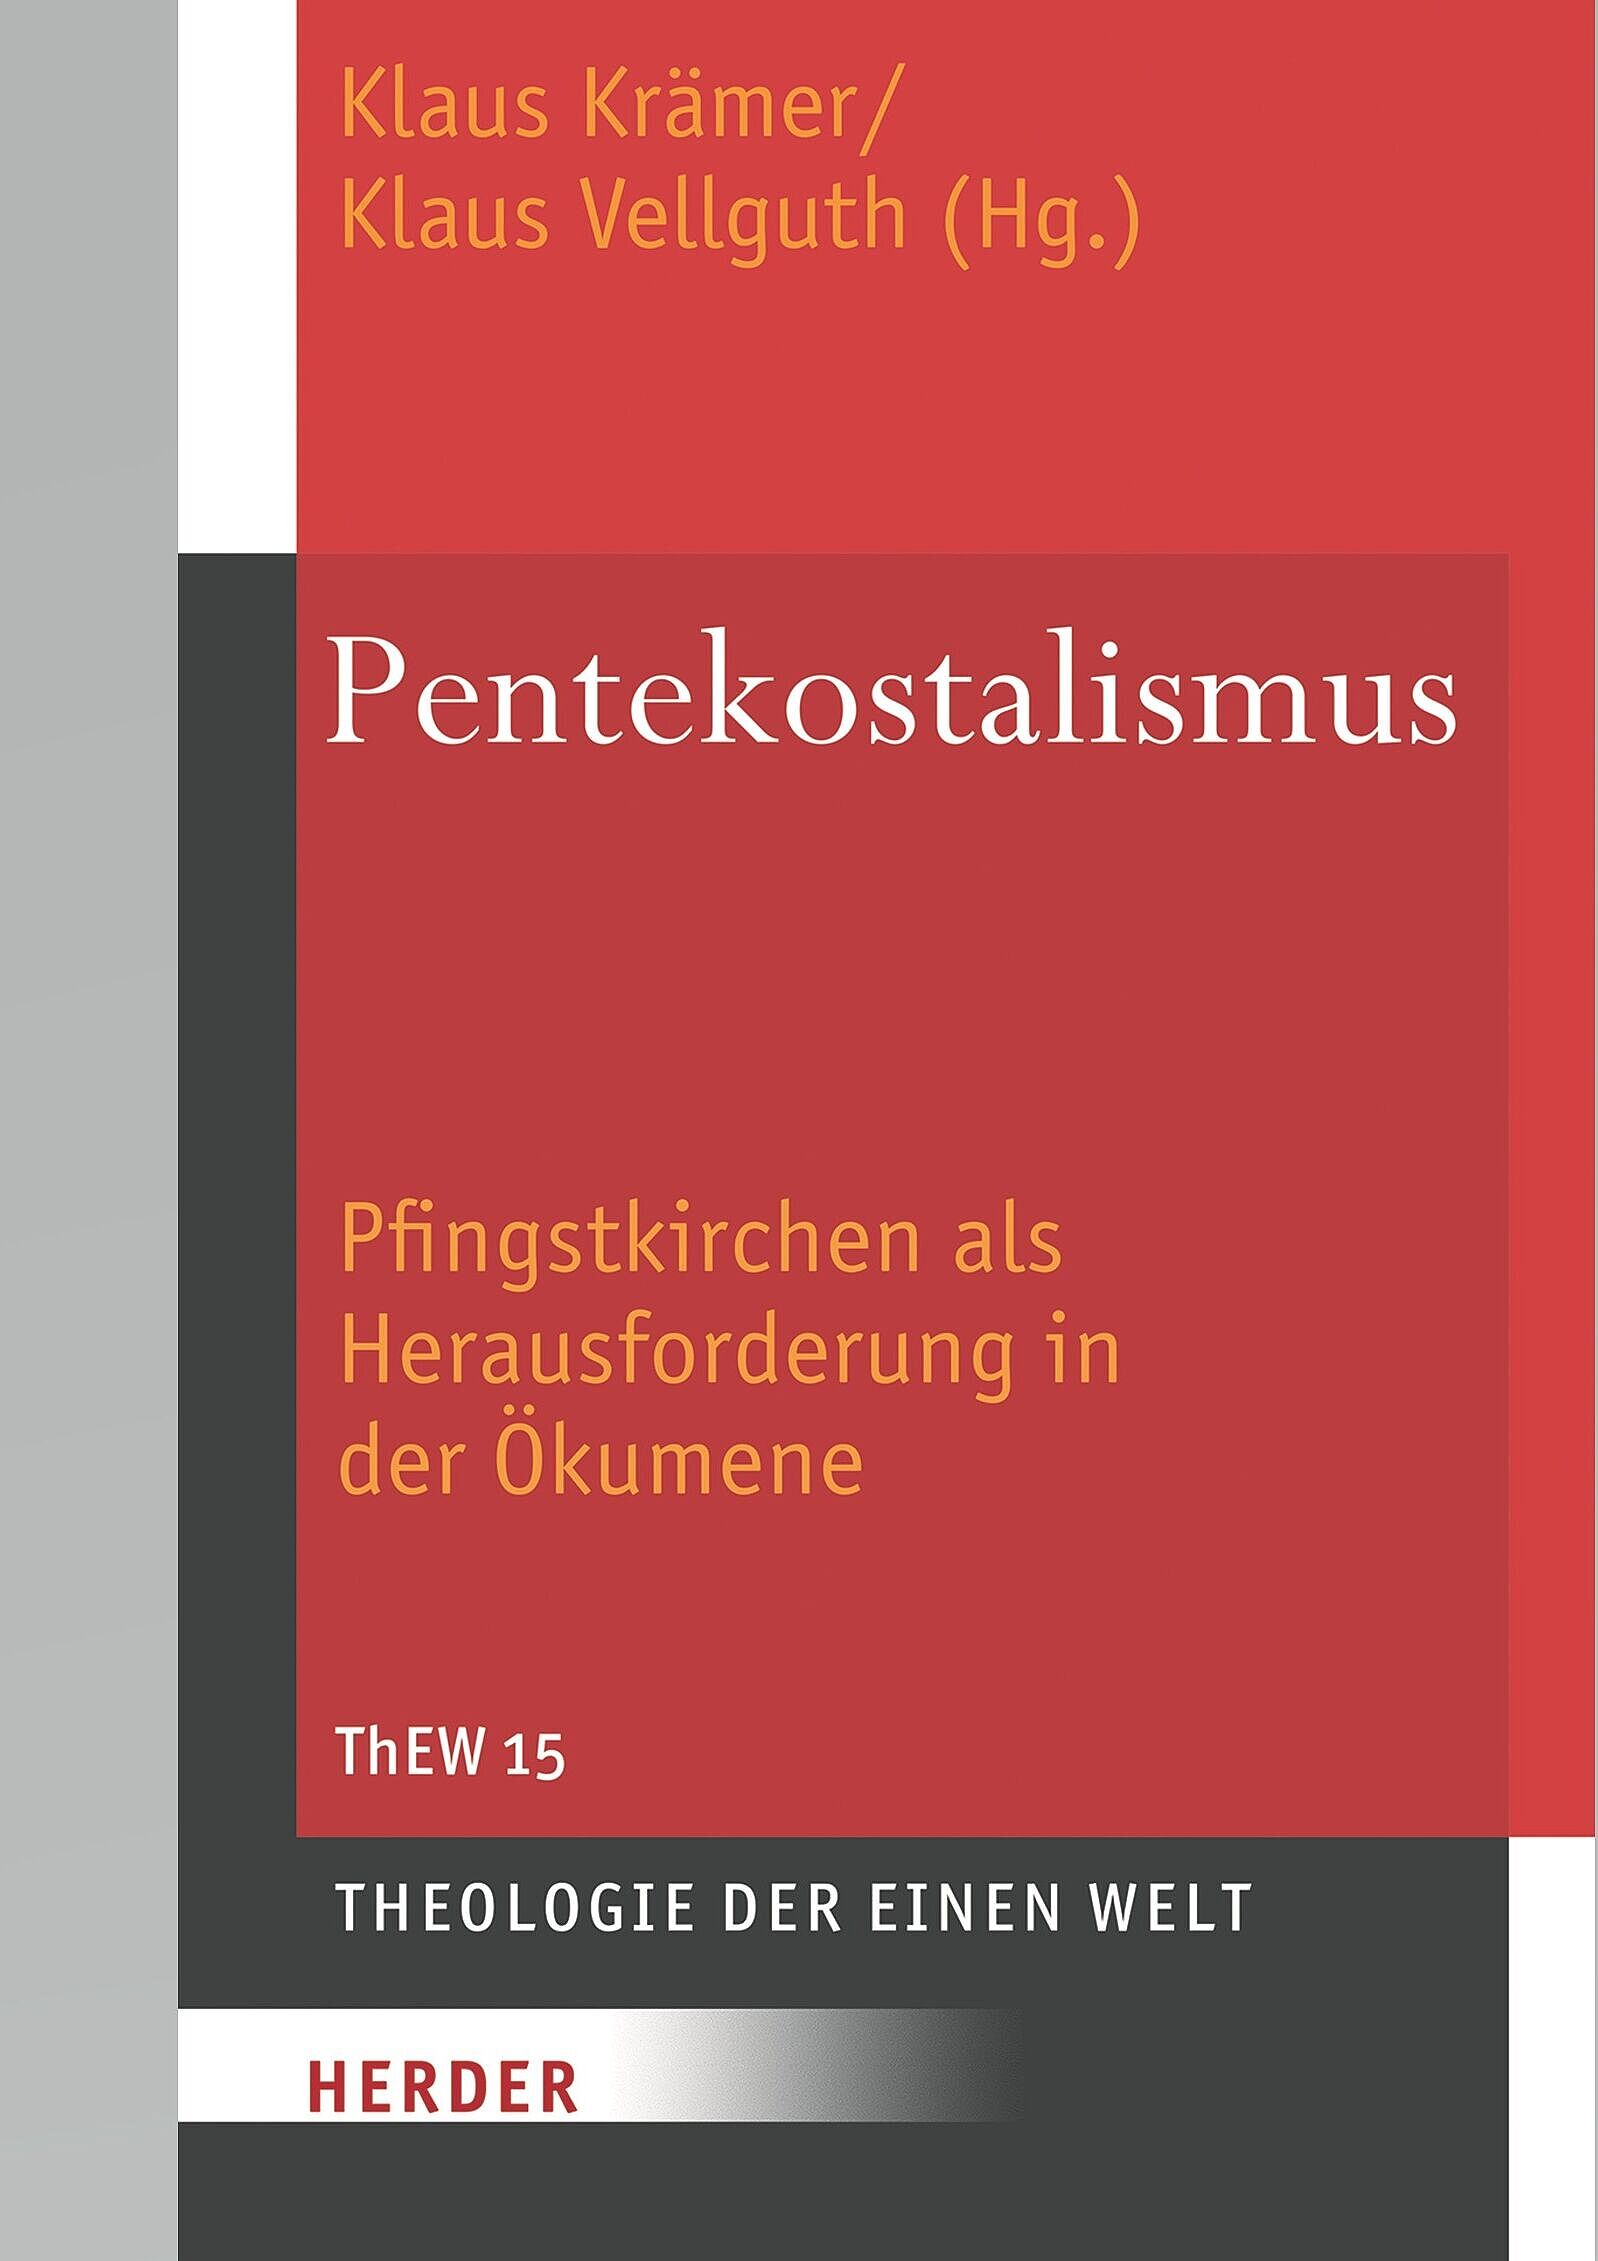 Theologie der Einen Welt (ThEW 15): Pentekostalismus